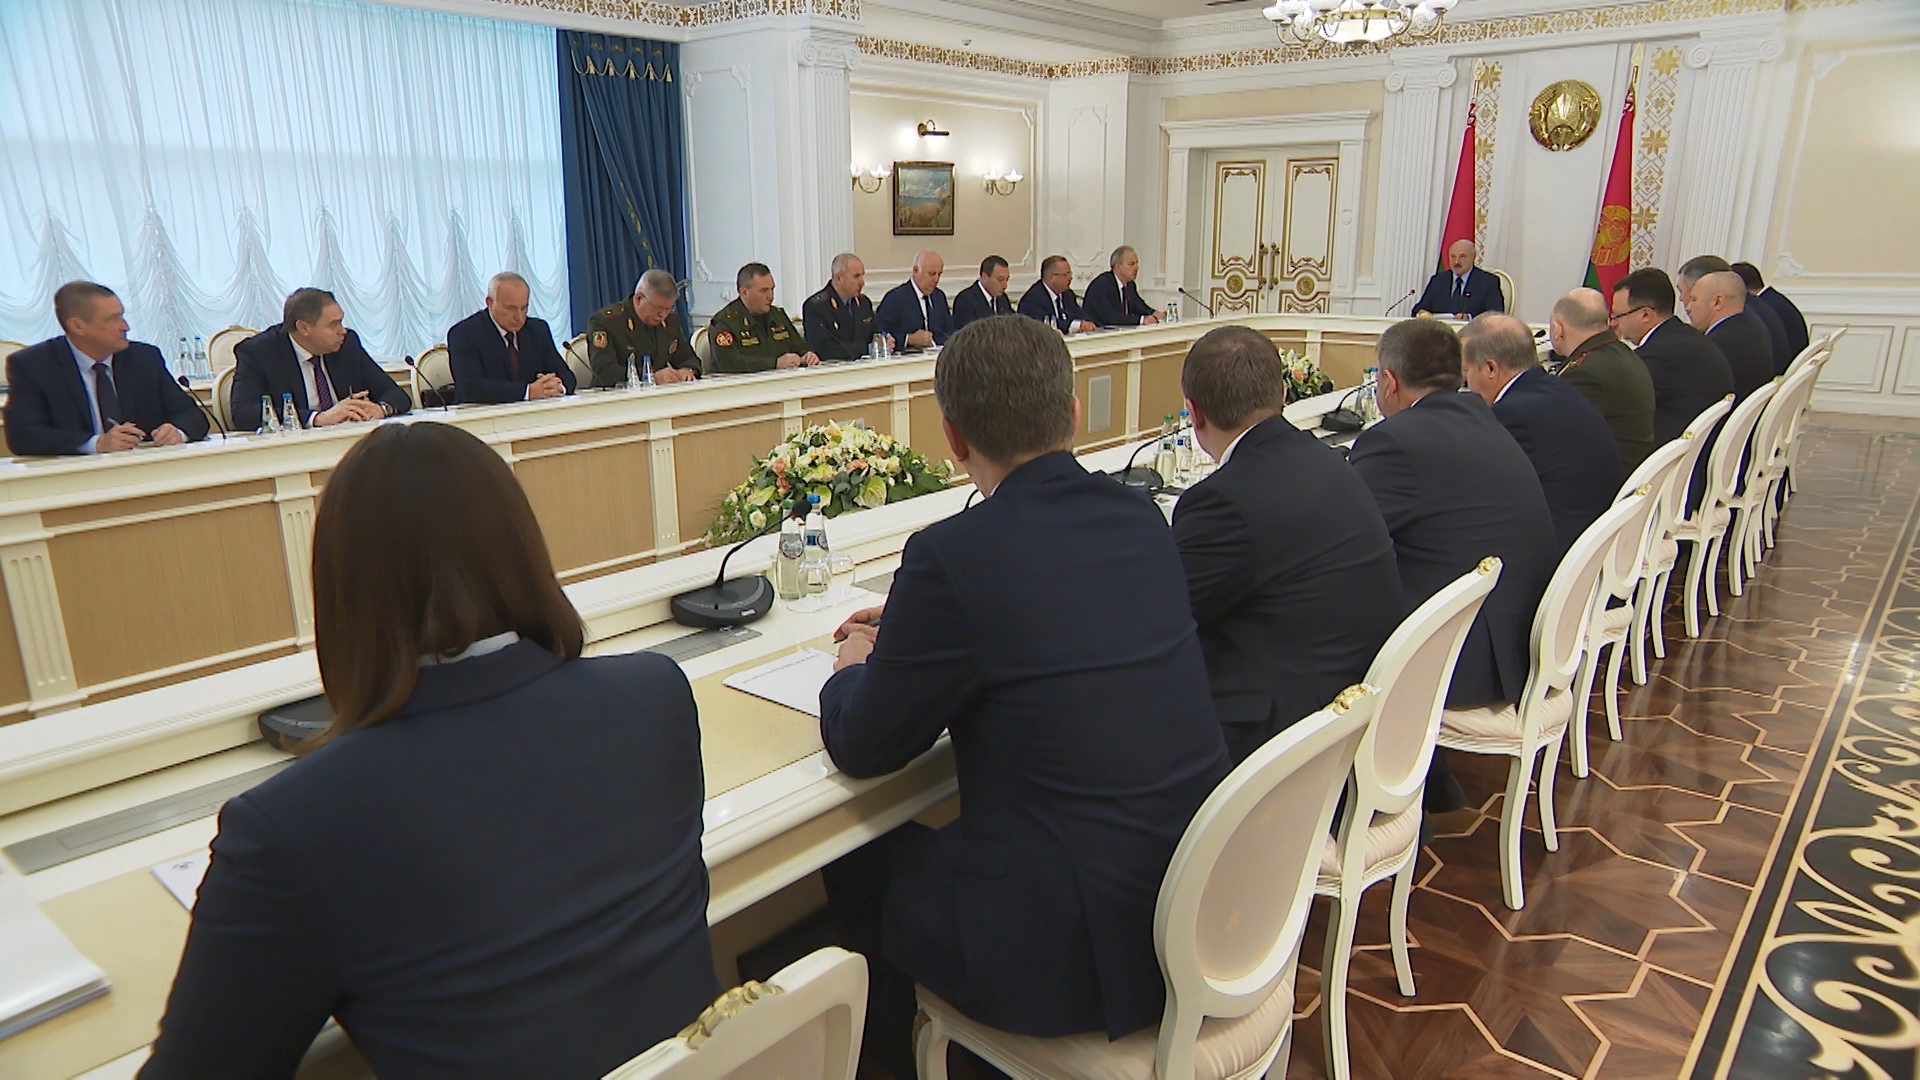 А.Лукашенко: Внутренняя стабильность - гарантия выживания Беларуси